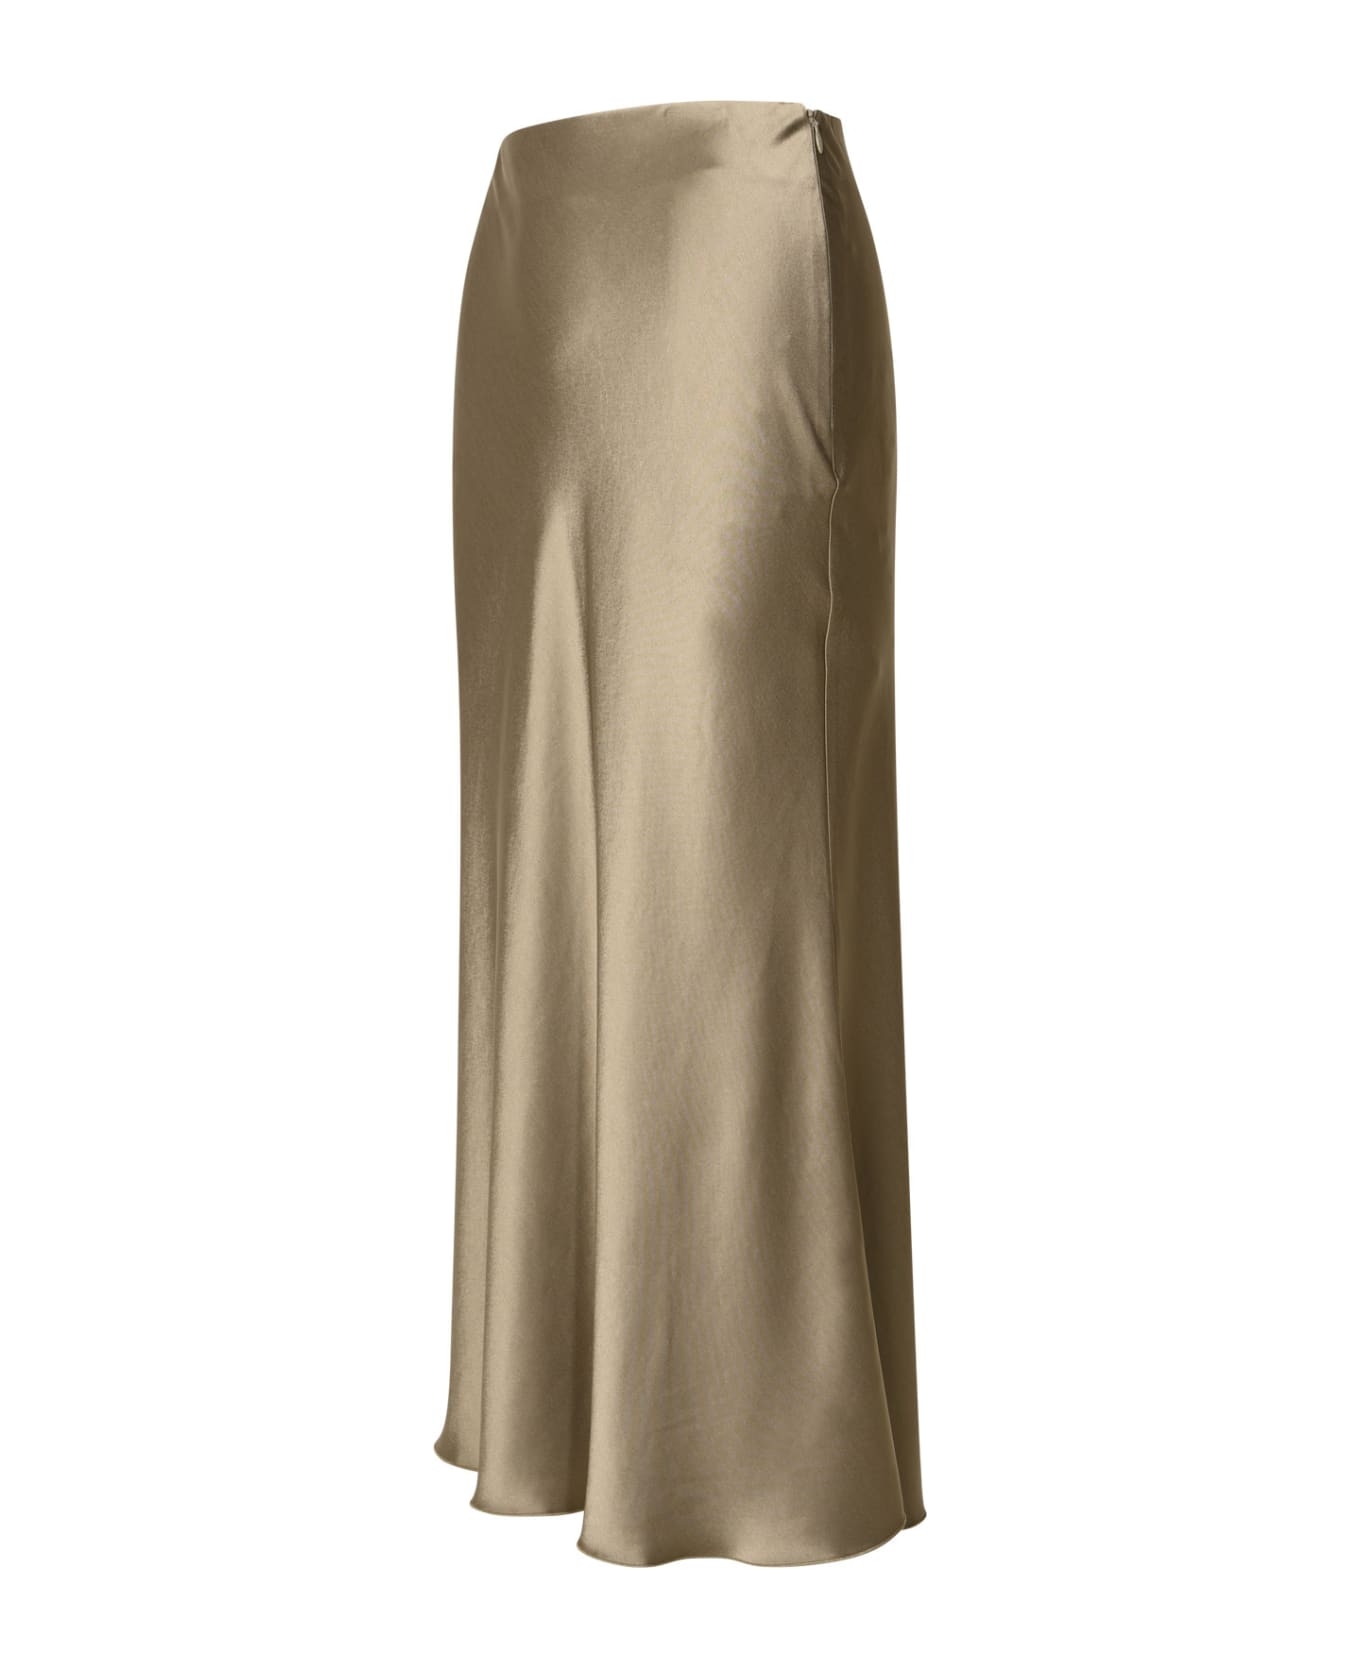 Nanushka 'razi' Skirt In Brown Acetate Blend - Beige